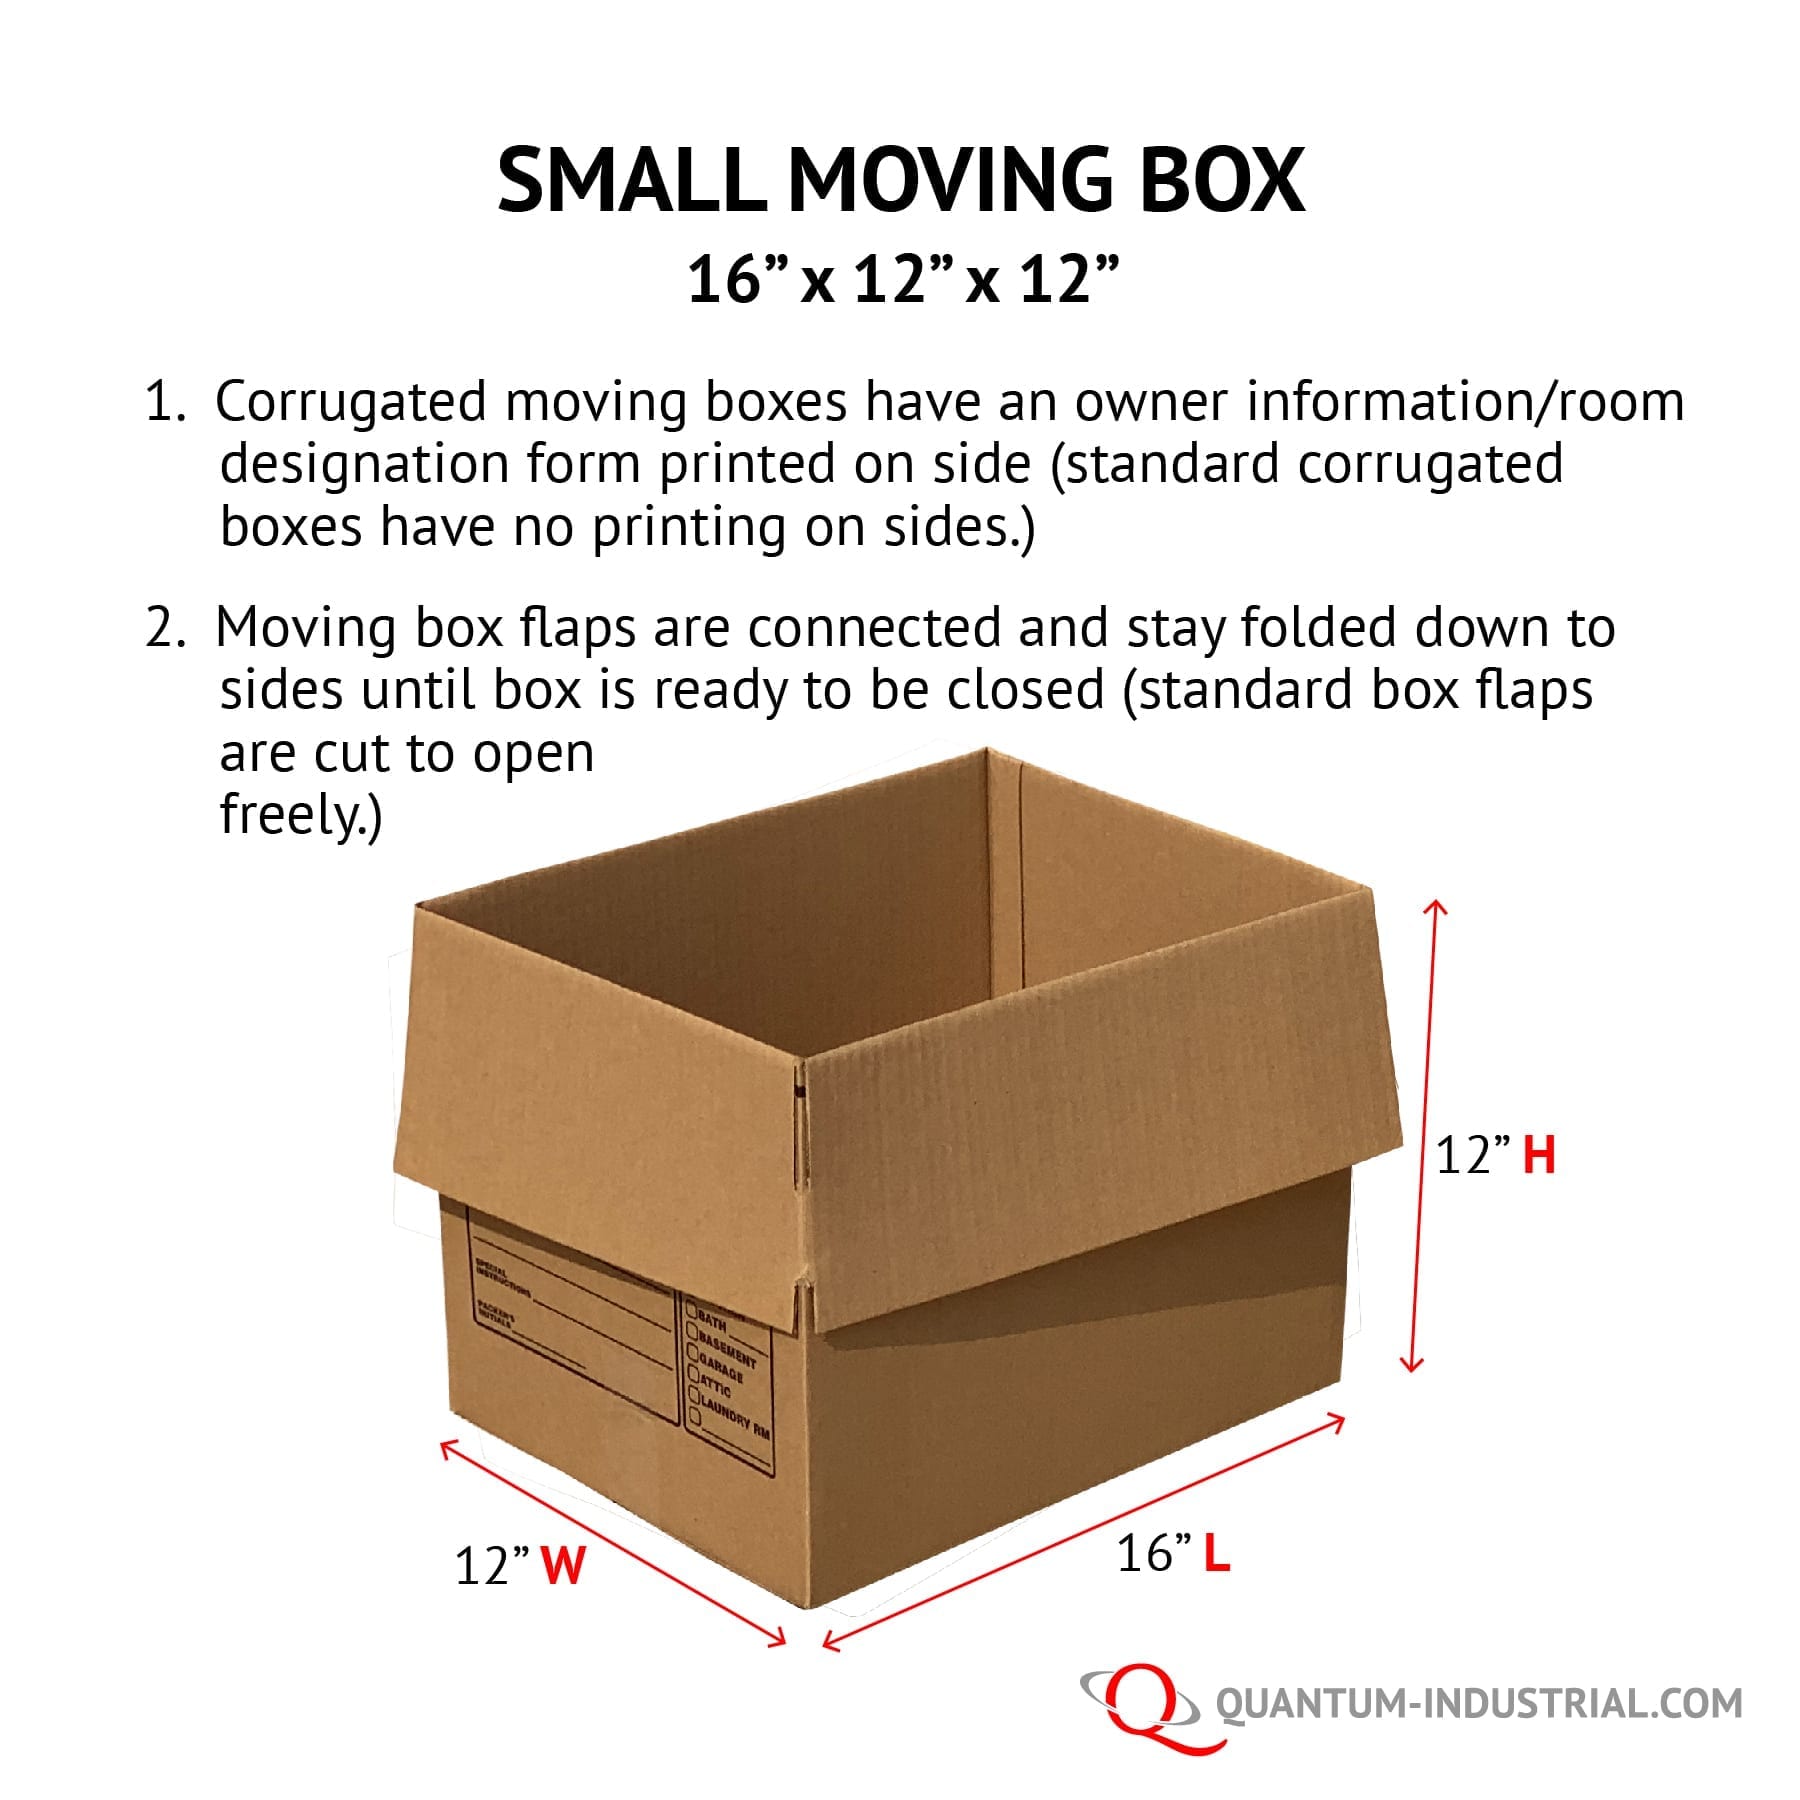 https://quantum-industrial.com/wp-content/uploads/2019/07/Quantum-Industrial-Small-Moving-Box-graphic.jpg